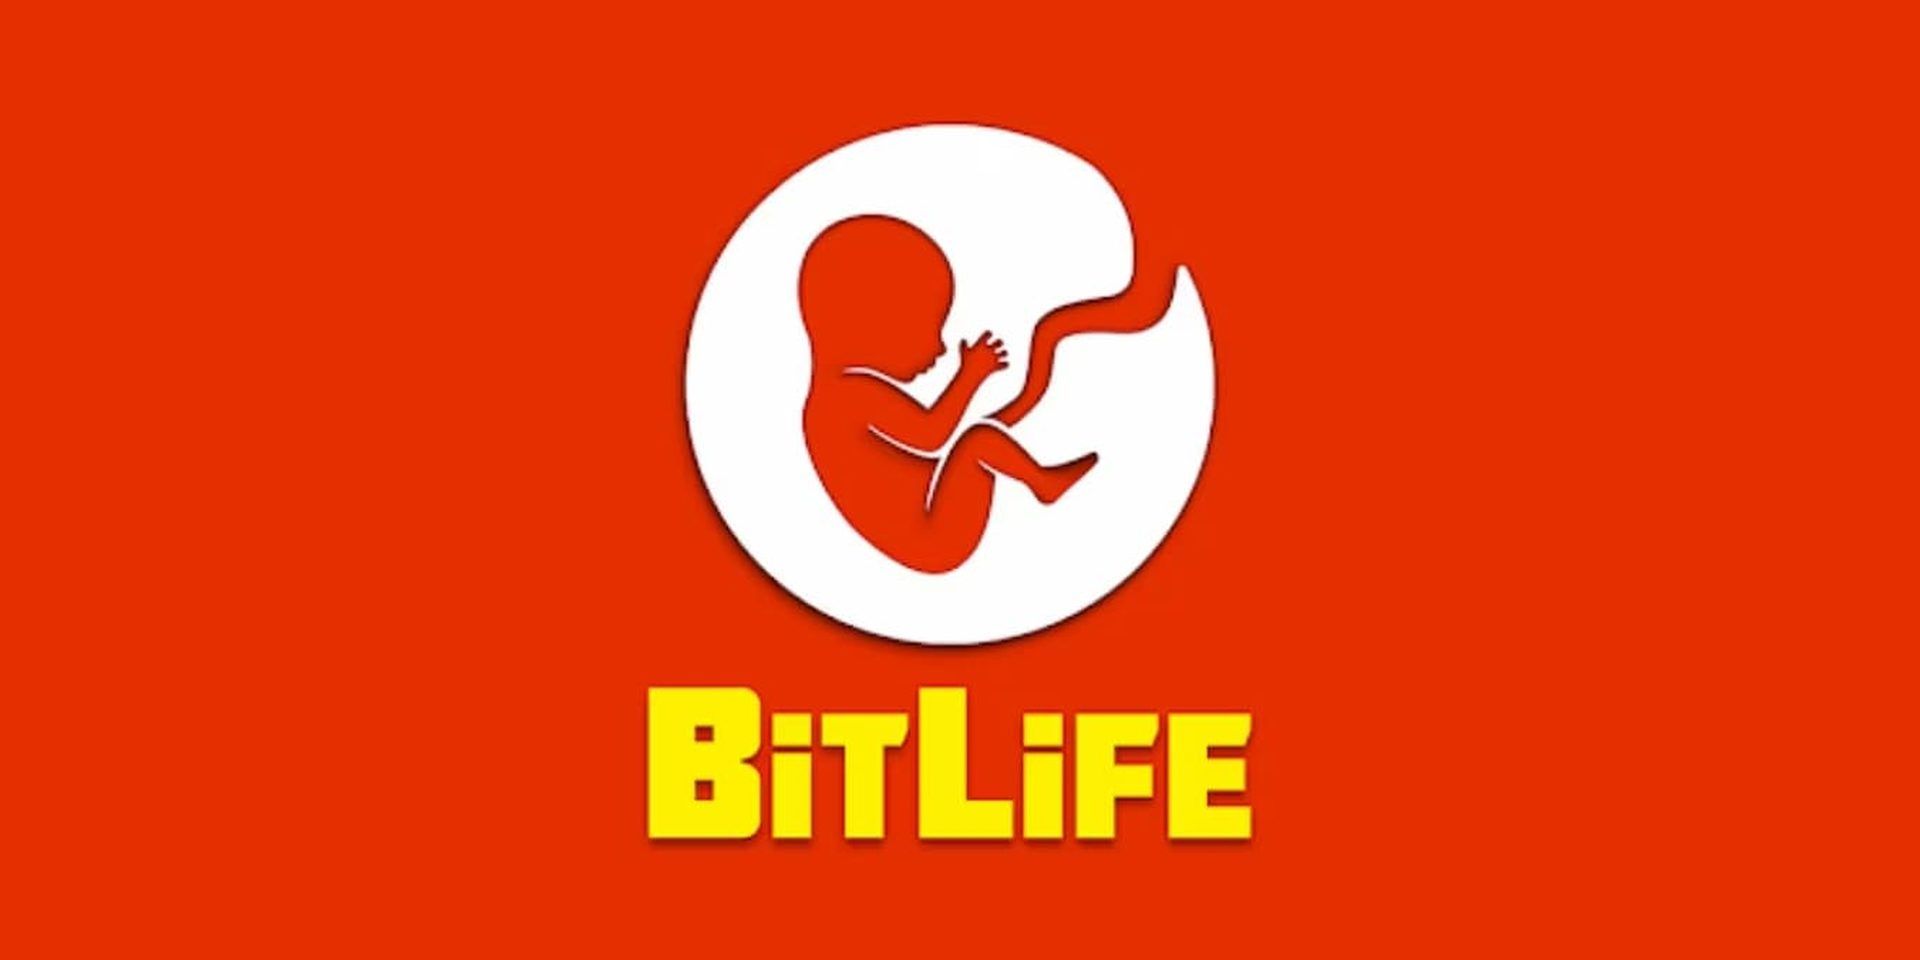 BitLife 신 모드: Bitlife에서 신 모드는 무엇을 합니까?